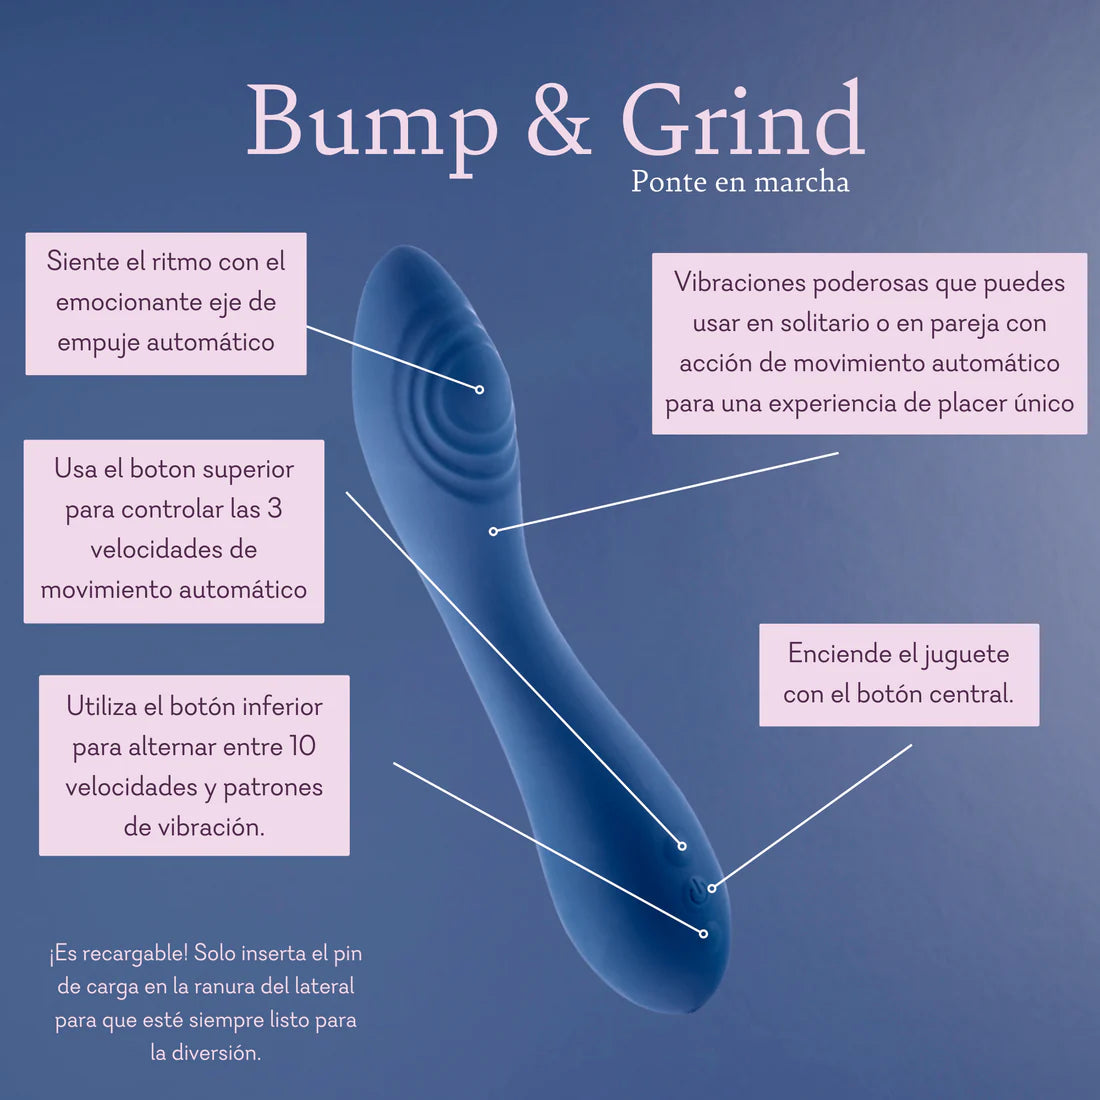 Bump & Grind